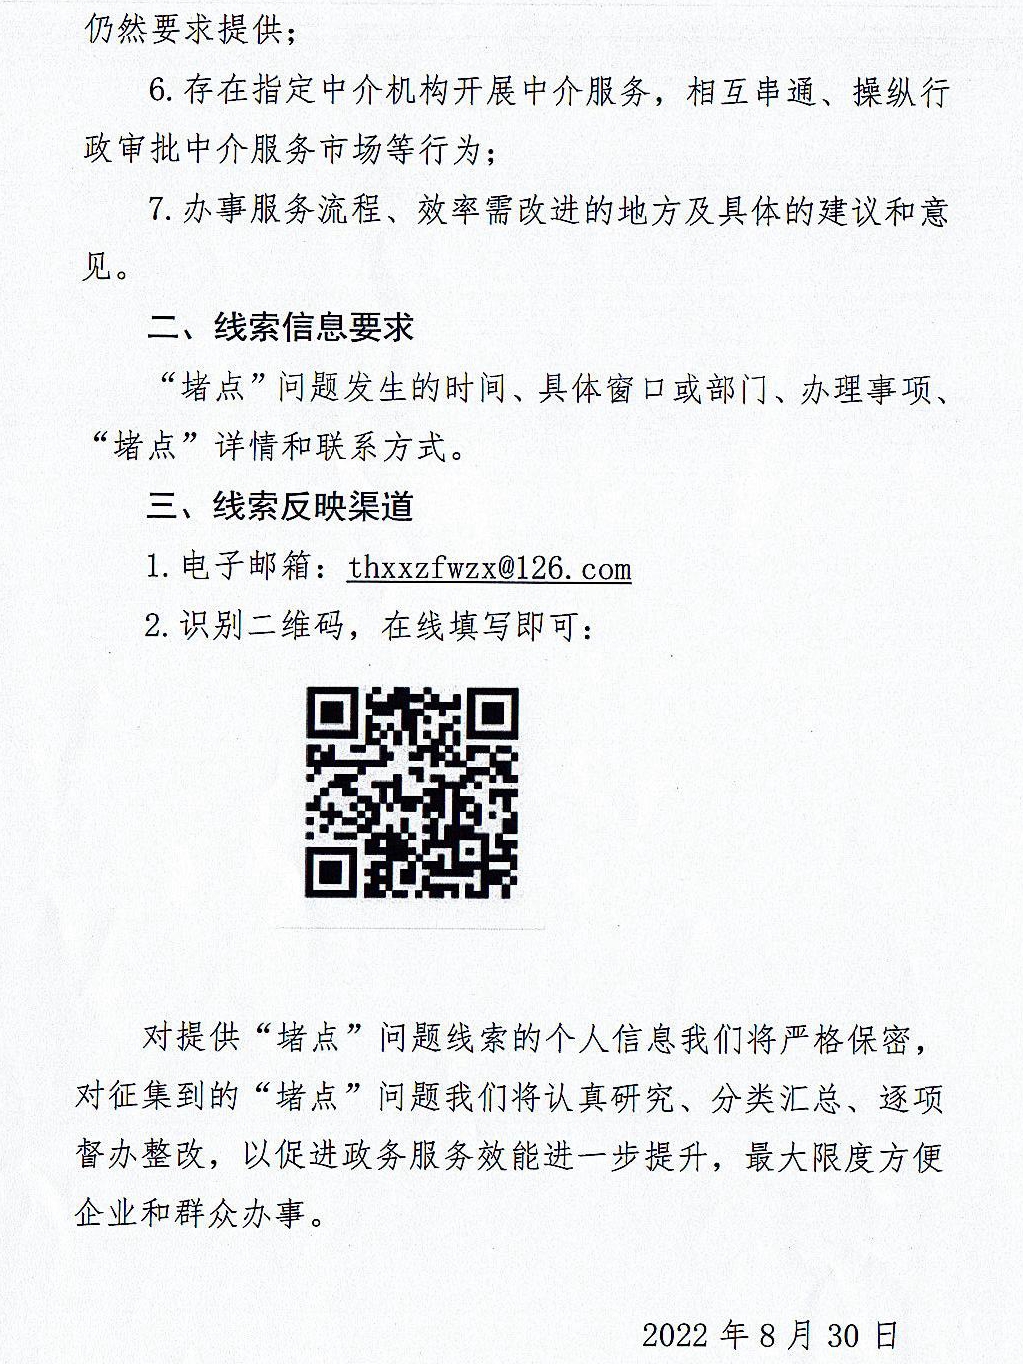 唐河县政务服务事项办理“堵点”问题线索公开征集(2)_3.jpg